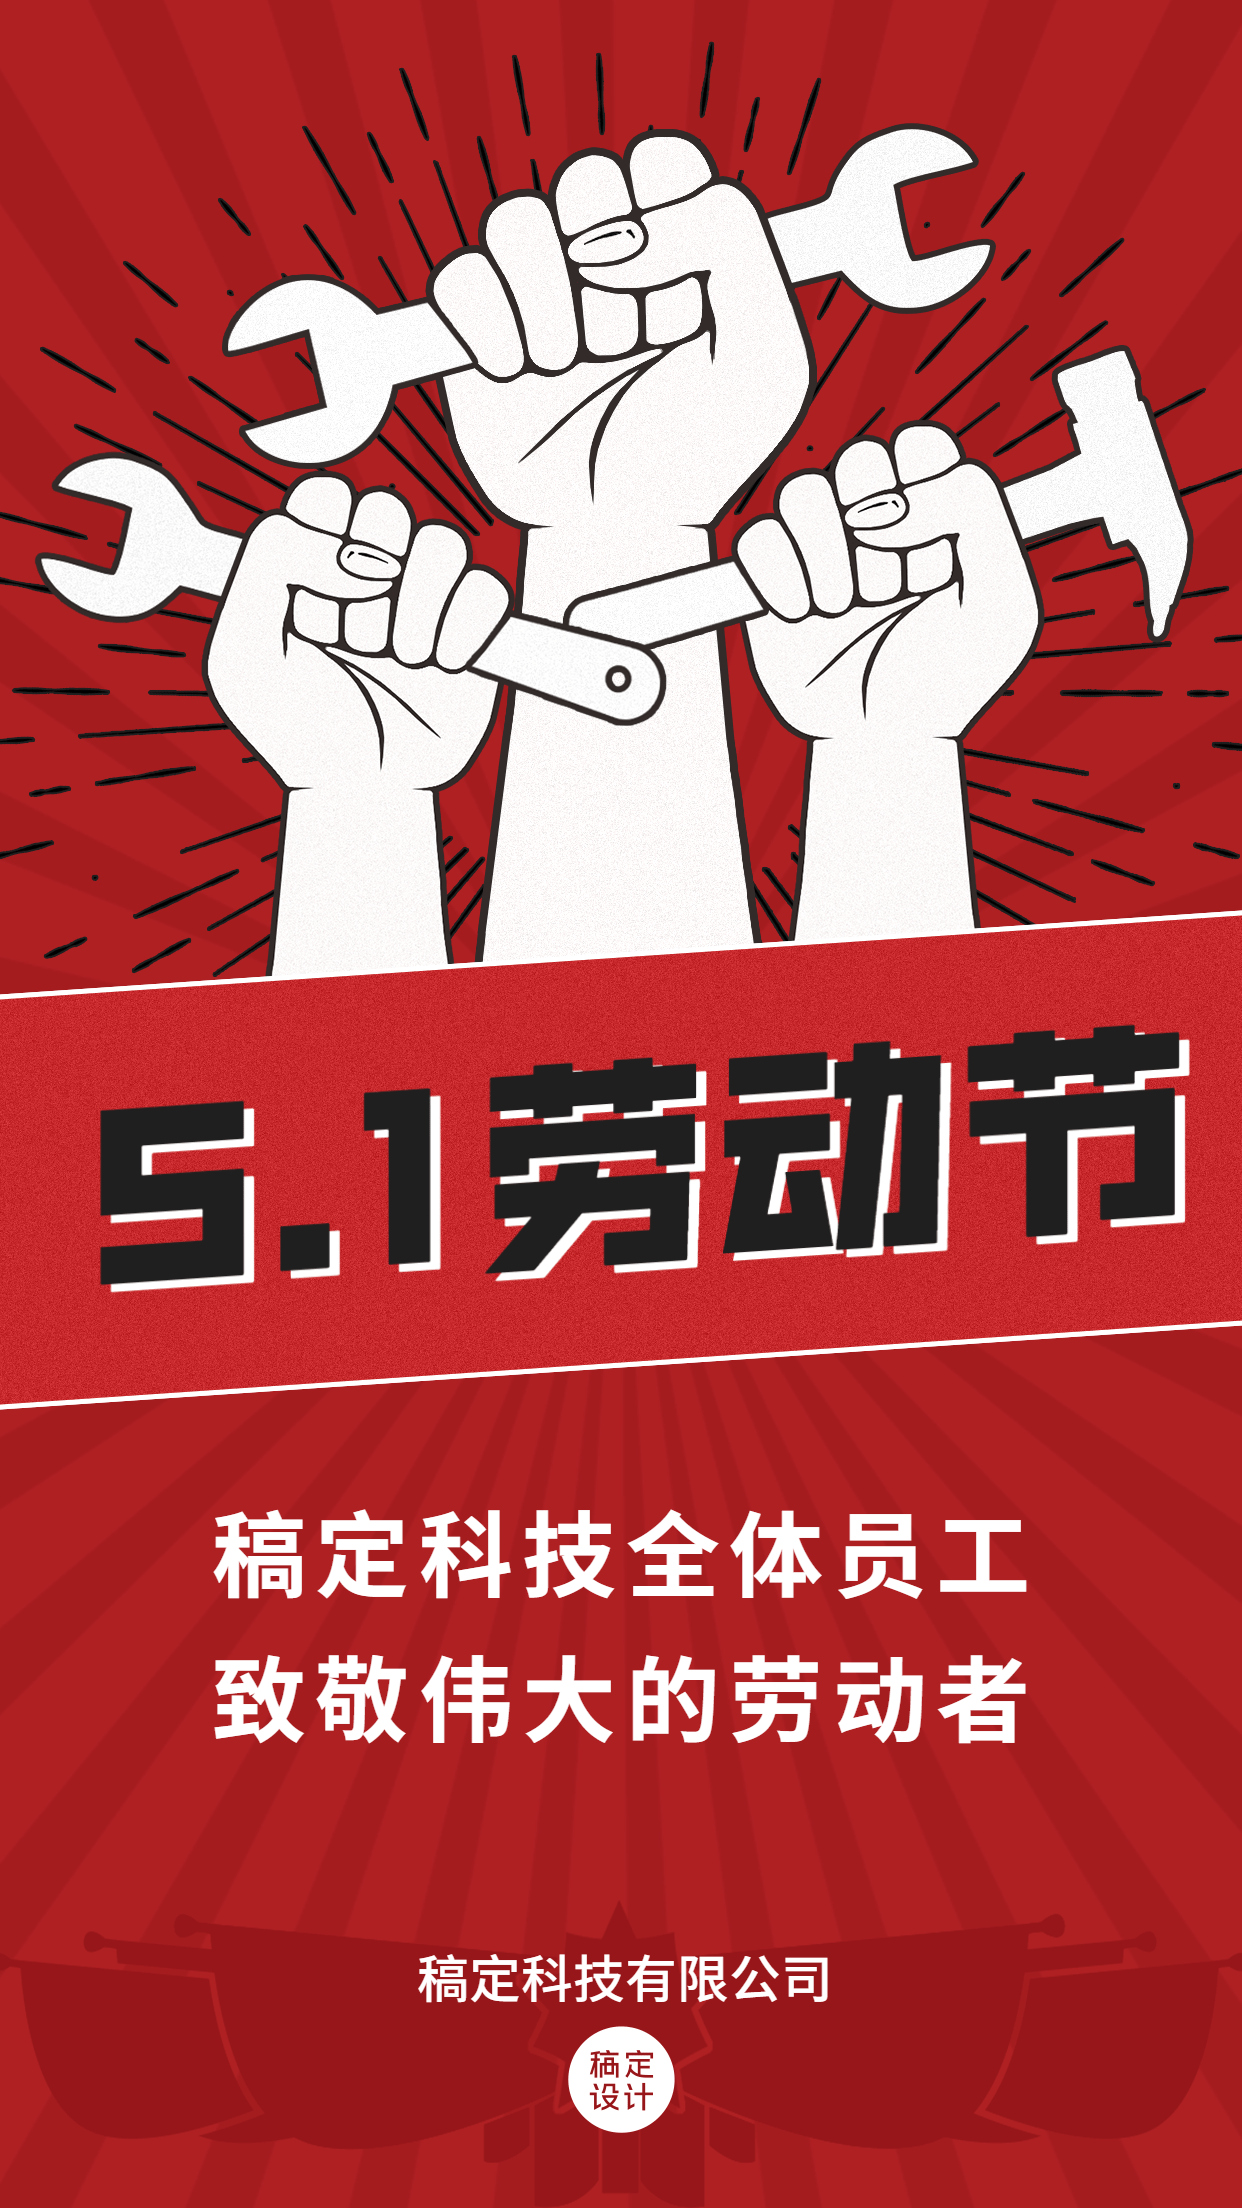 五一劳动节企业行政节日祝福问候海报